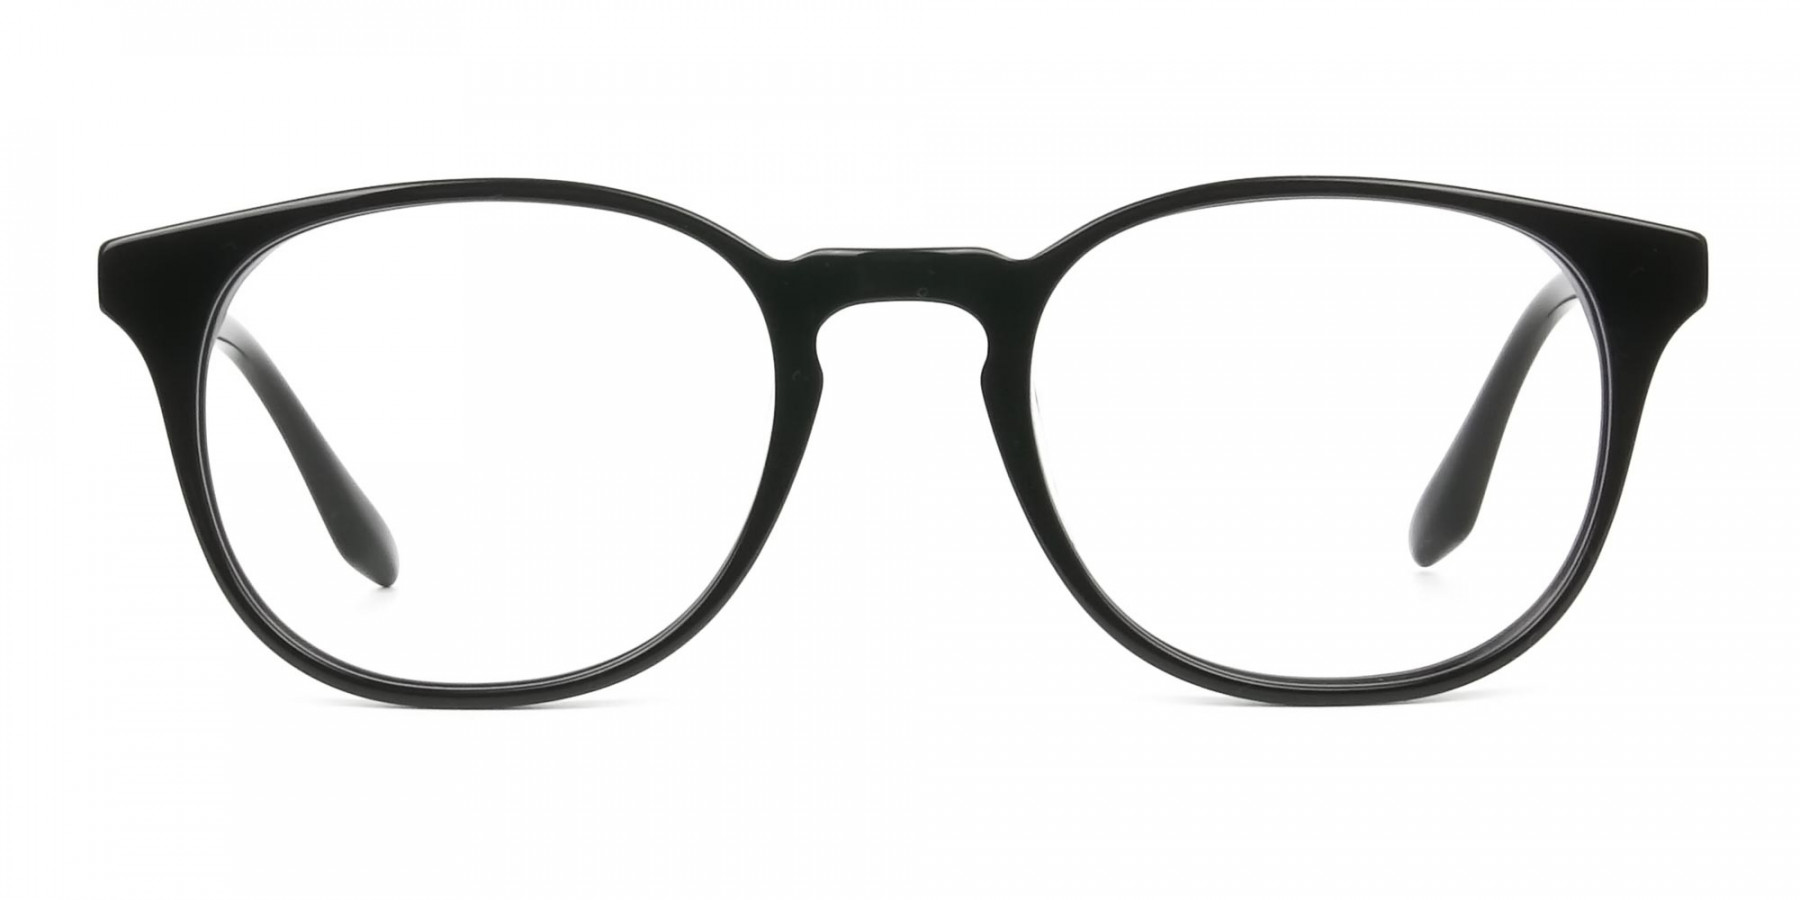 Black Wayfarer Style Glasses in Thin Frame - 1